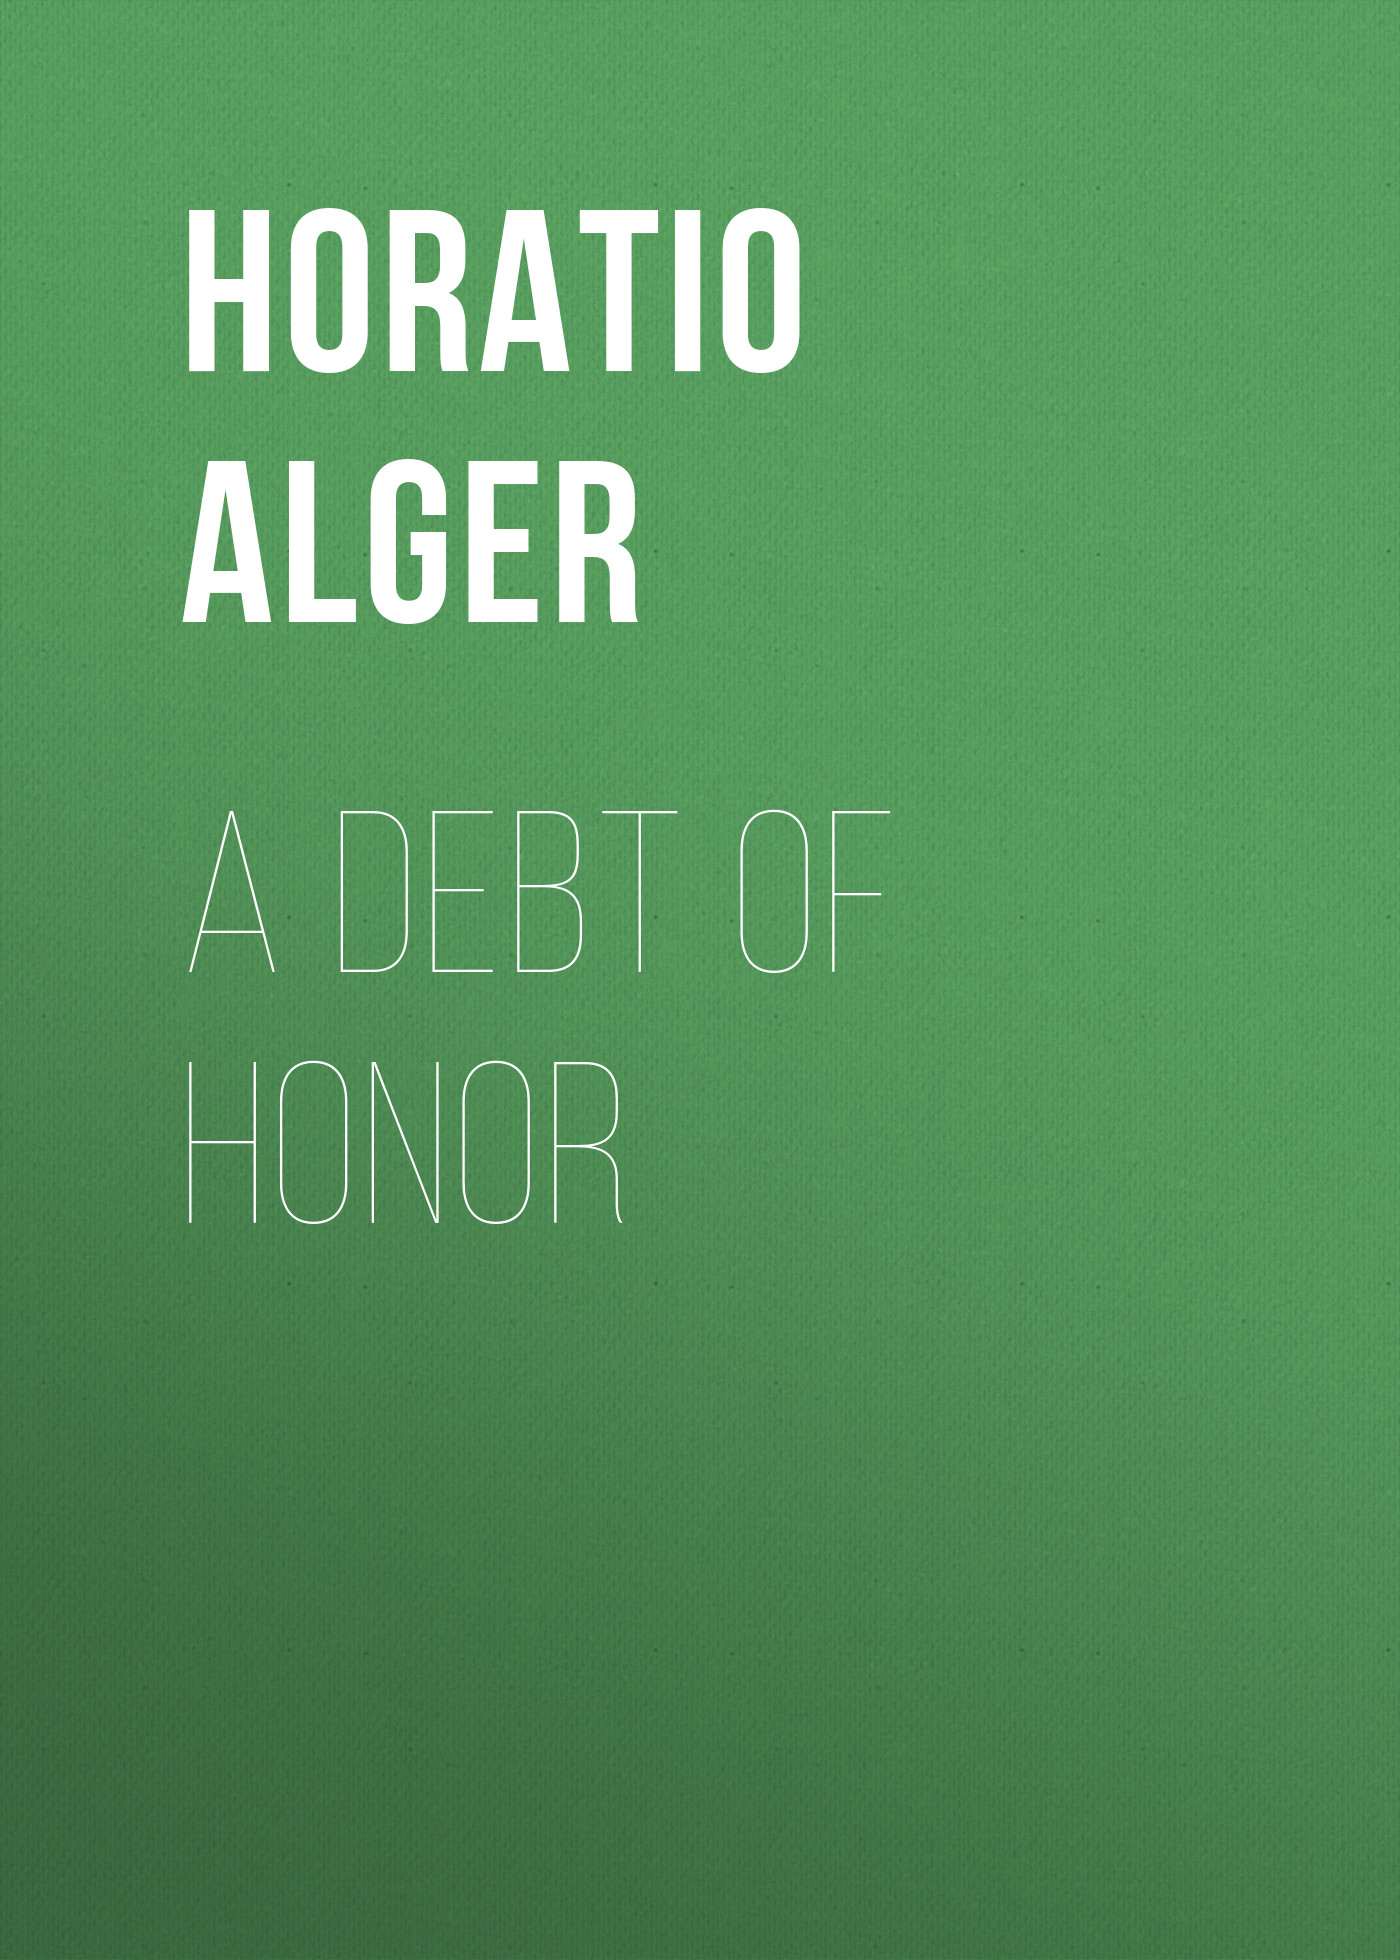 Книга A Debt of Honor из серии , созданная Horatio Alger, может относится к жанру Иностранные языки, Зарубежная классика. Стоимость электронной книги A Debt of Honor с идентификатором 23171475 составляет 5.99 руб.